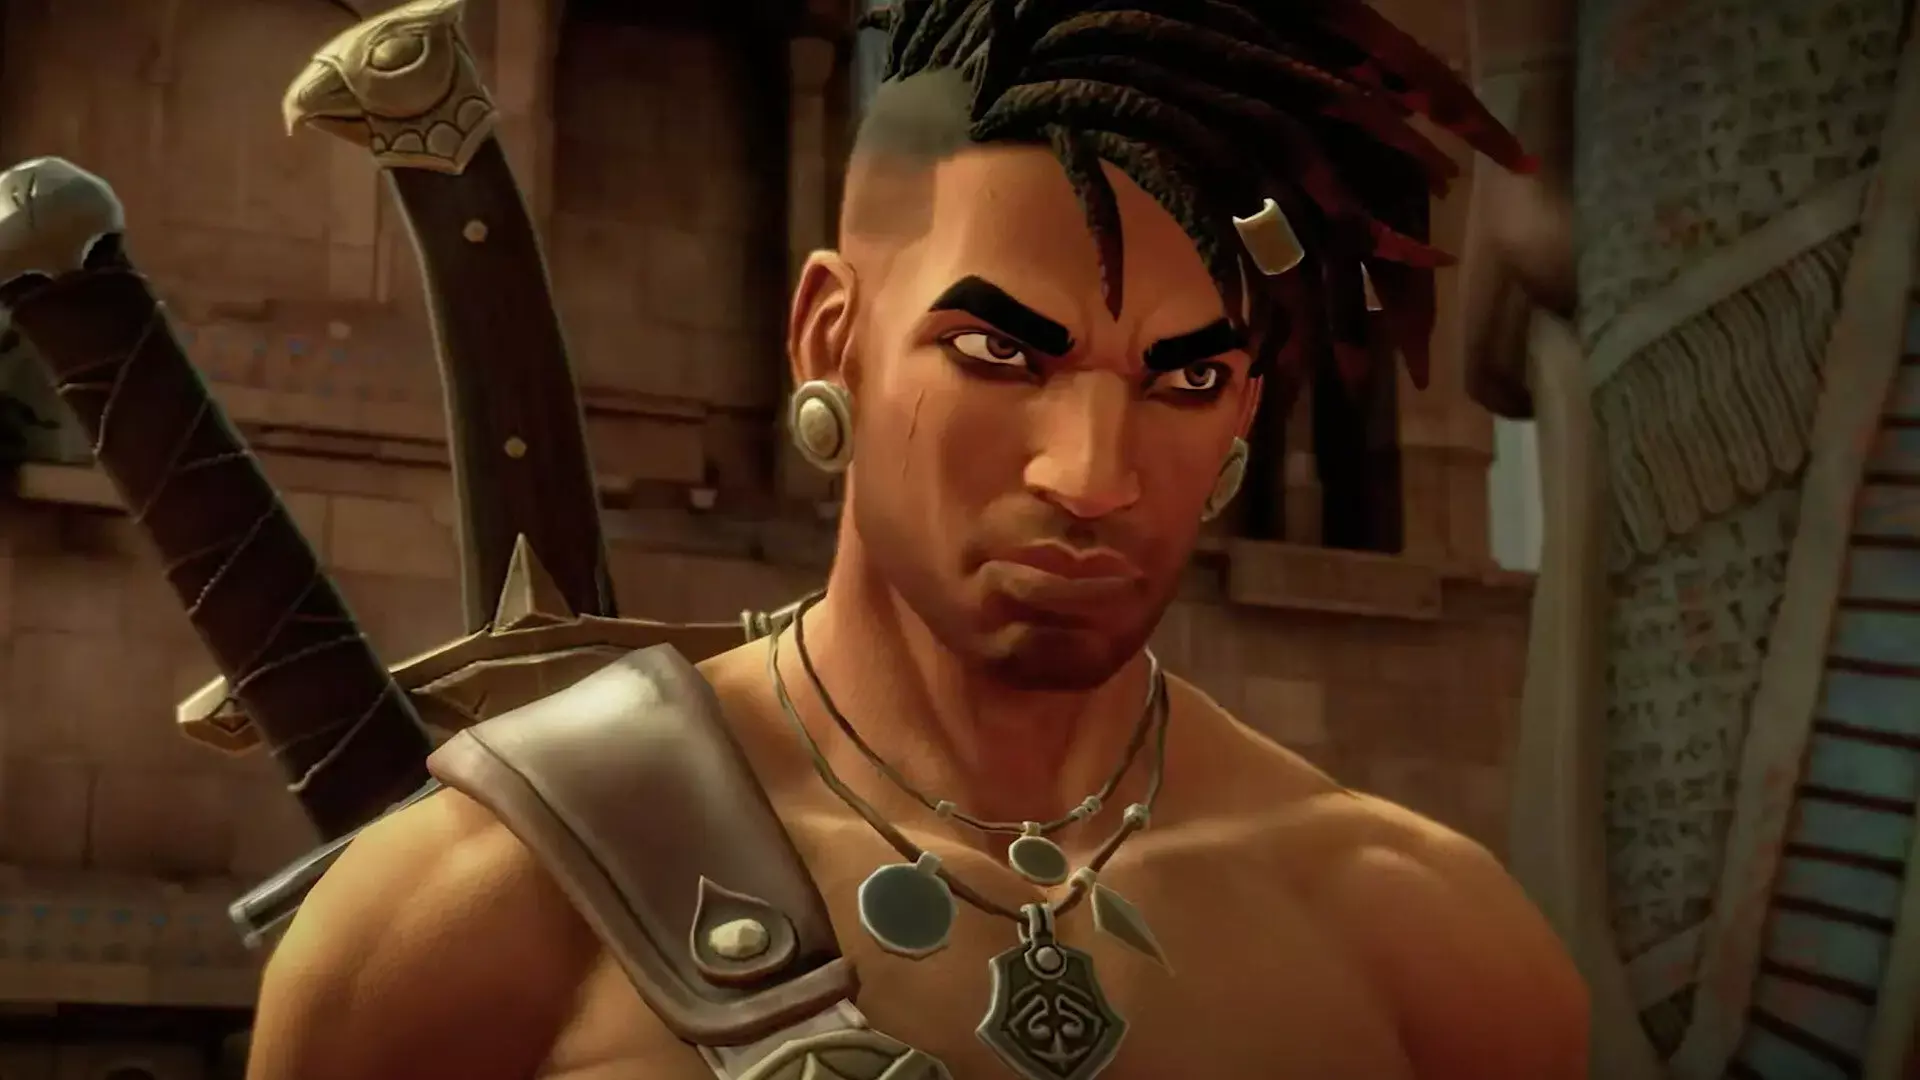 Prince of Persia: новая игра от разработчиков Dead Cells выйдет в этом году